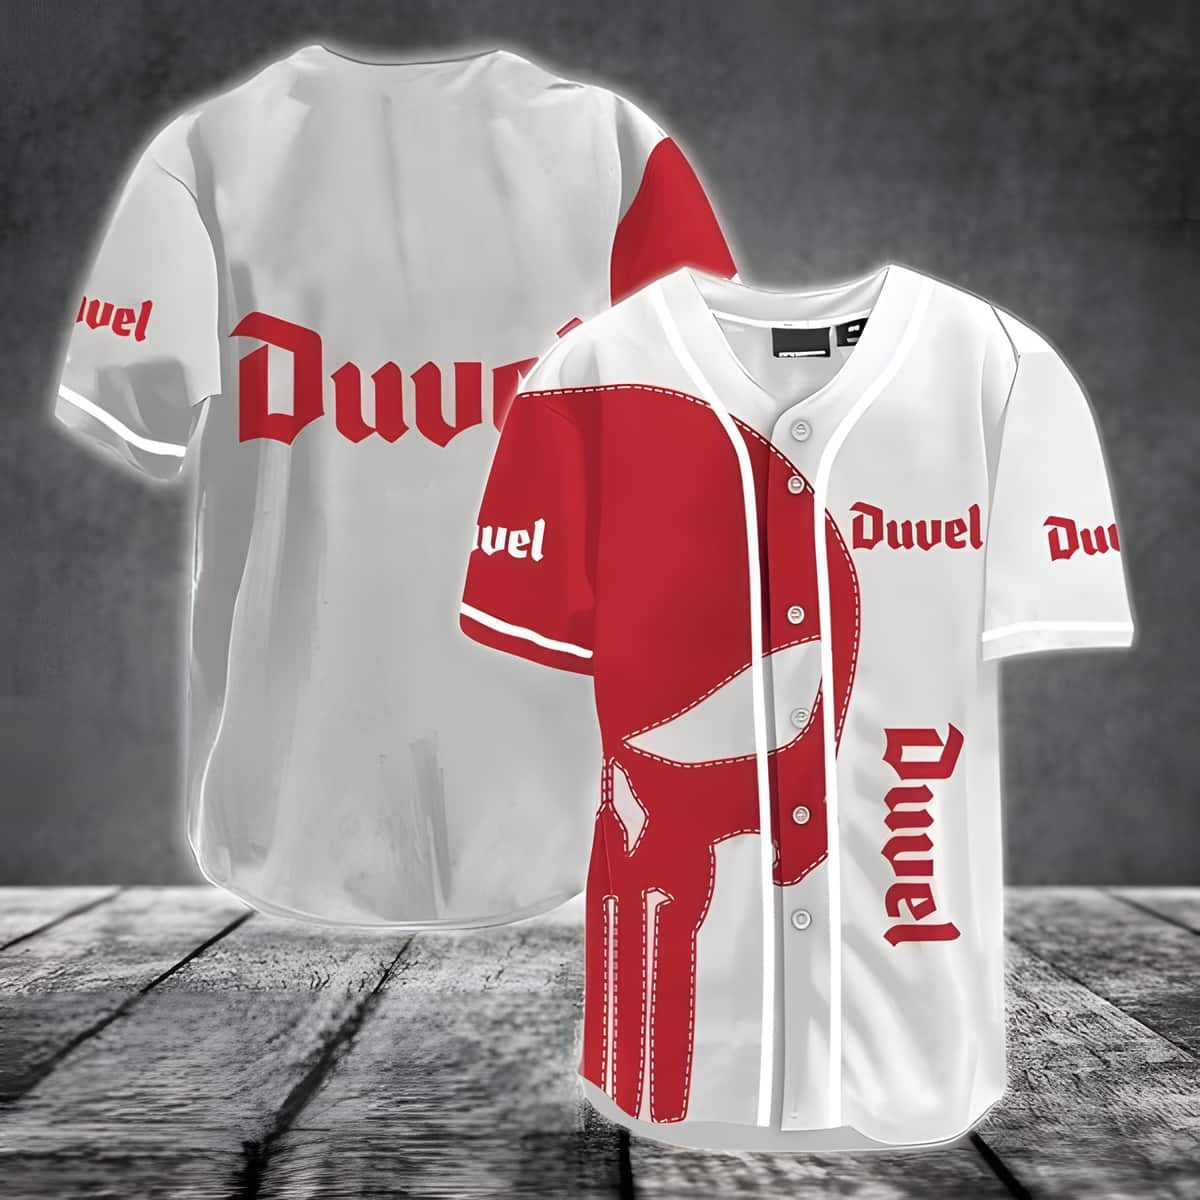 White Duvel Baseball Jersey And Red Skull Gift For Beer Lovers